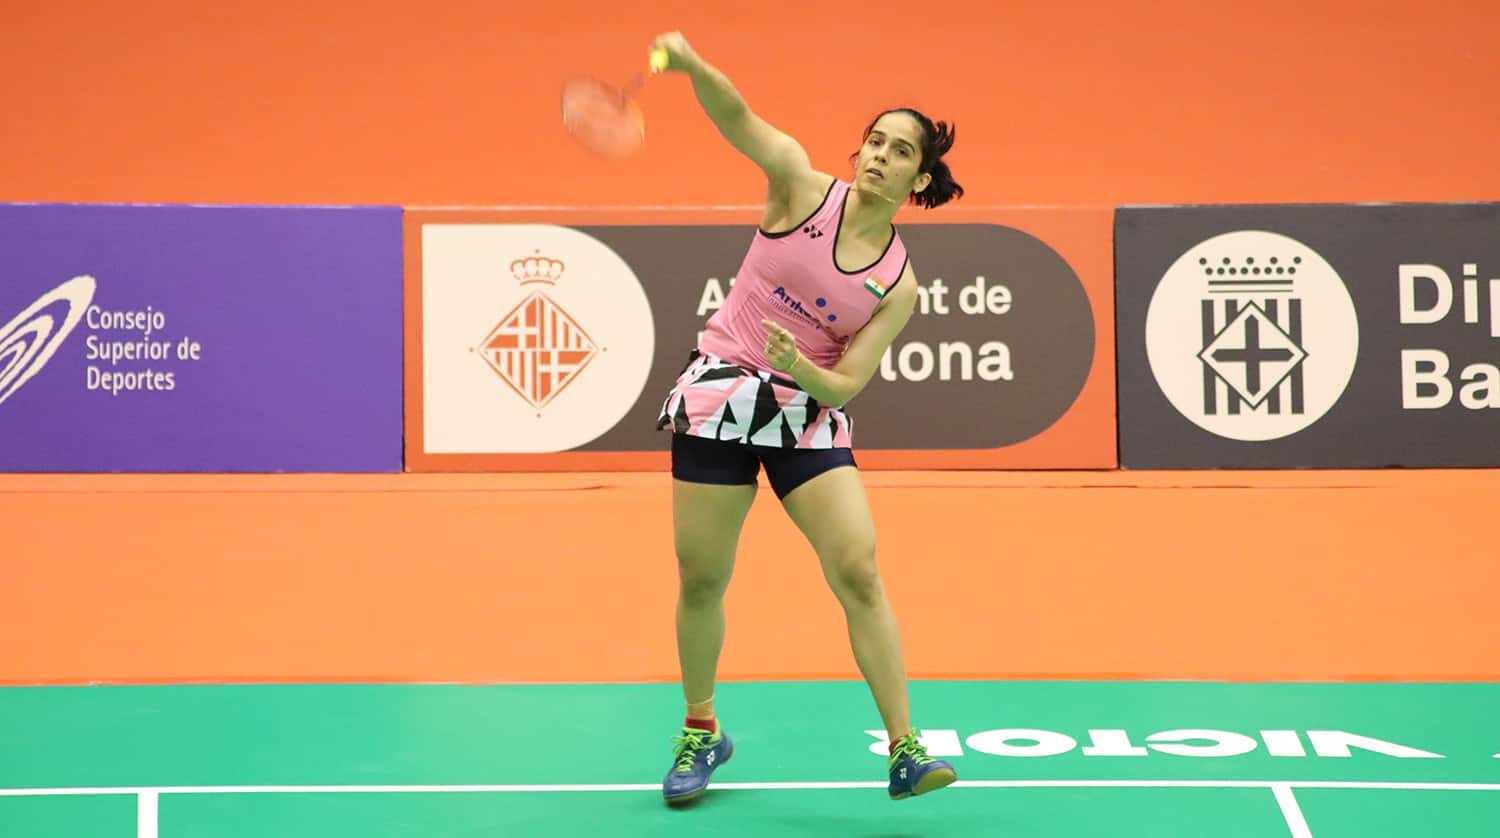  Barcelona Spain Masters: Saina Nehwal crashes out, Ajay Jayaram storms into semis